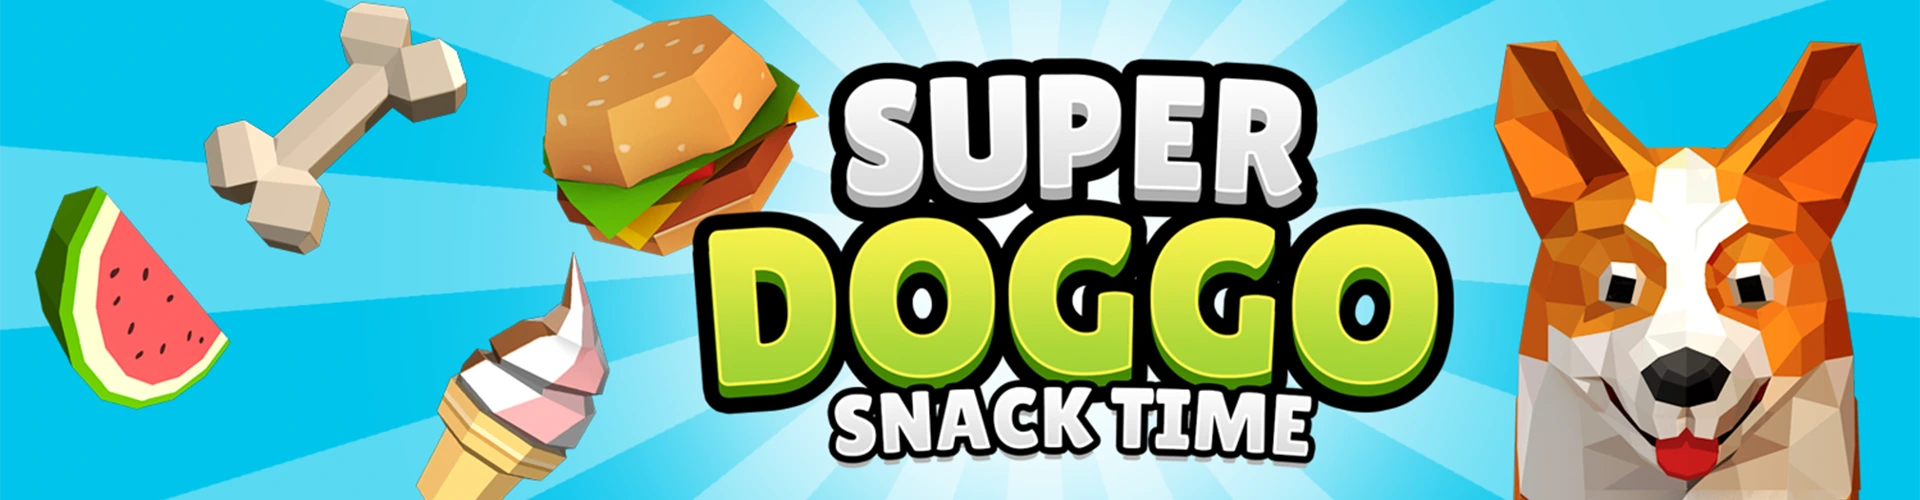 Super Doggo Snack Time